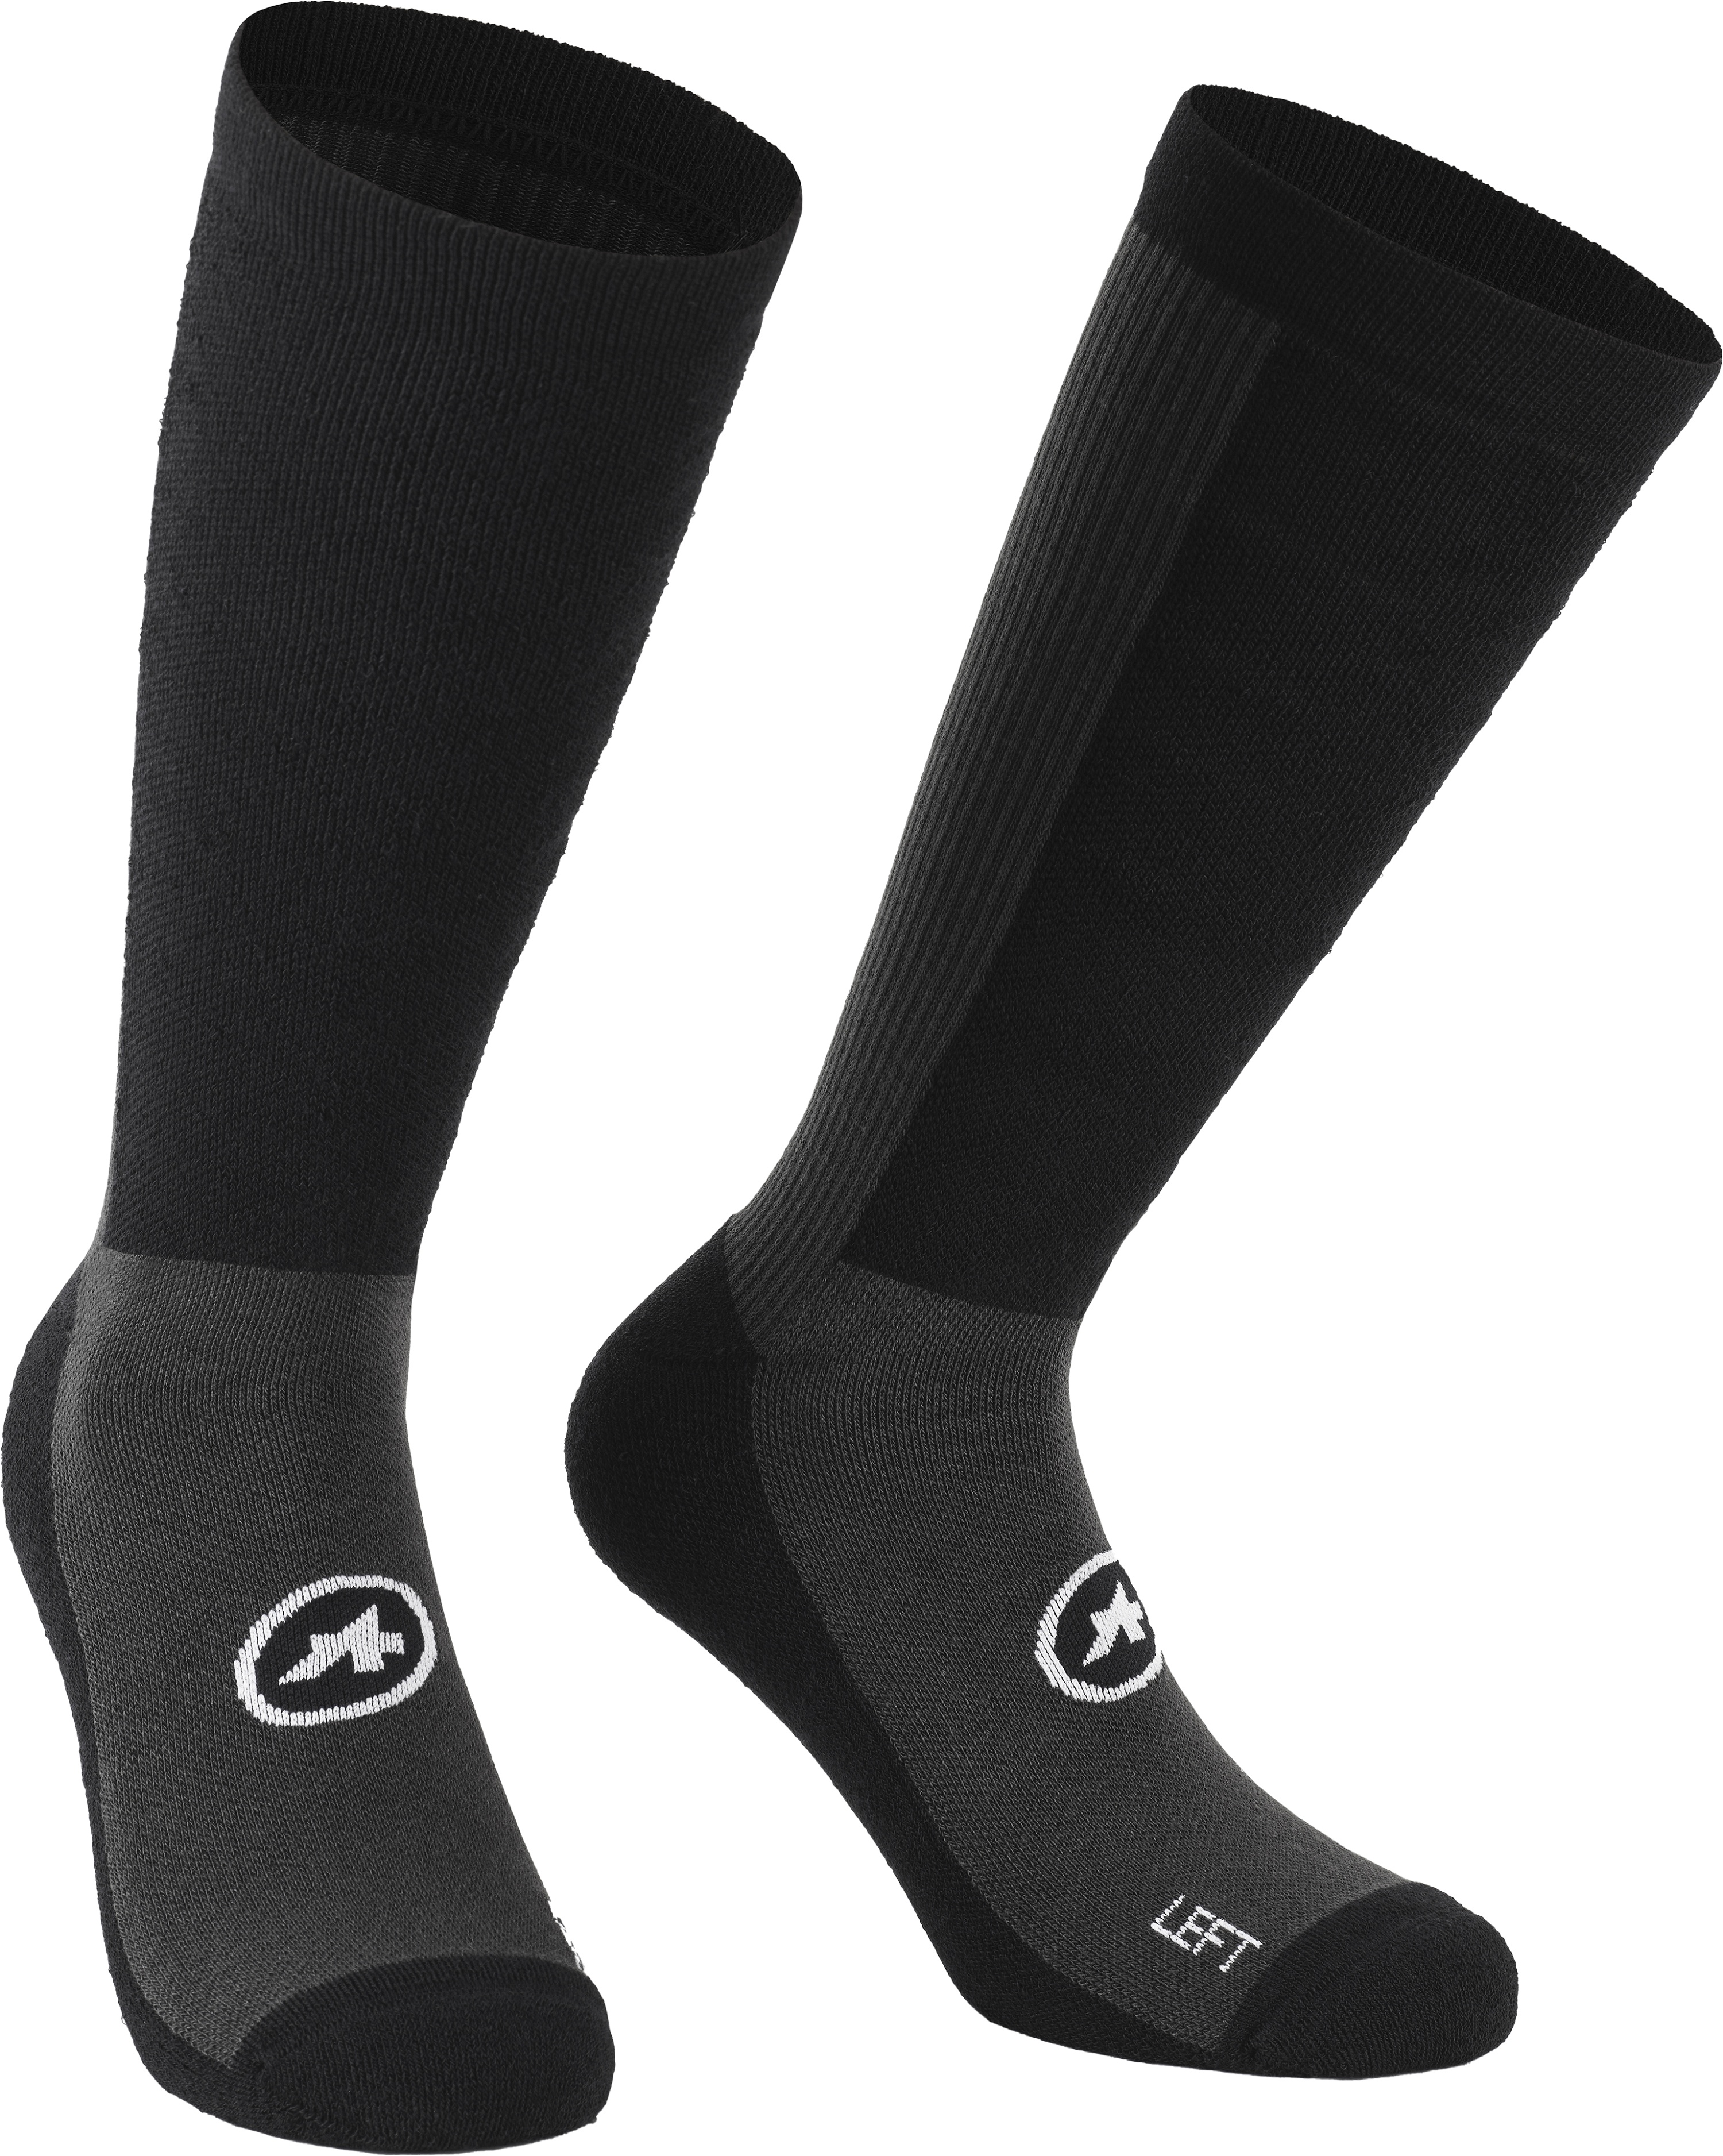 Beklædning - Sokker - Assos TRAIL Winter Socks T3 - Sort